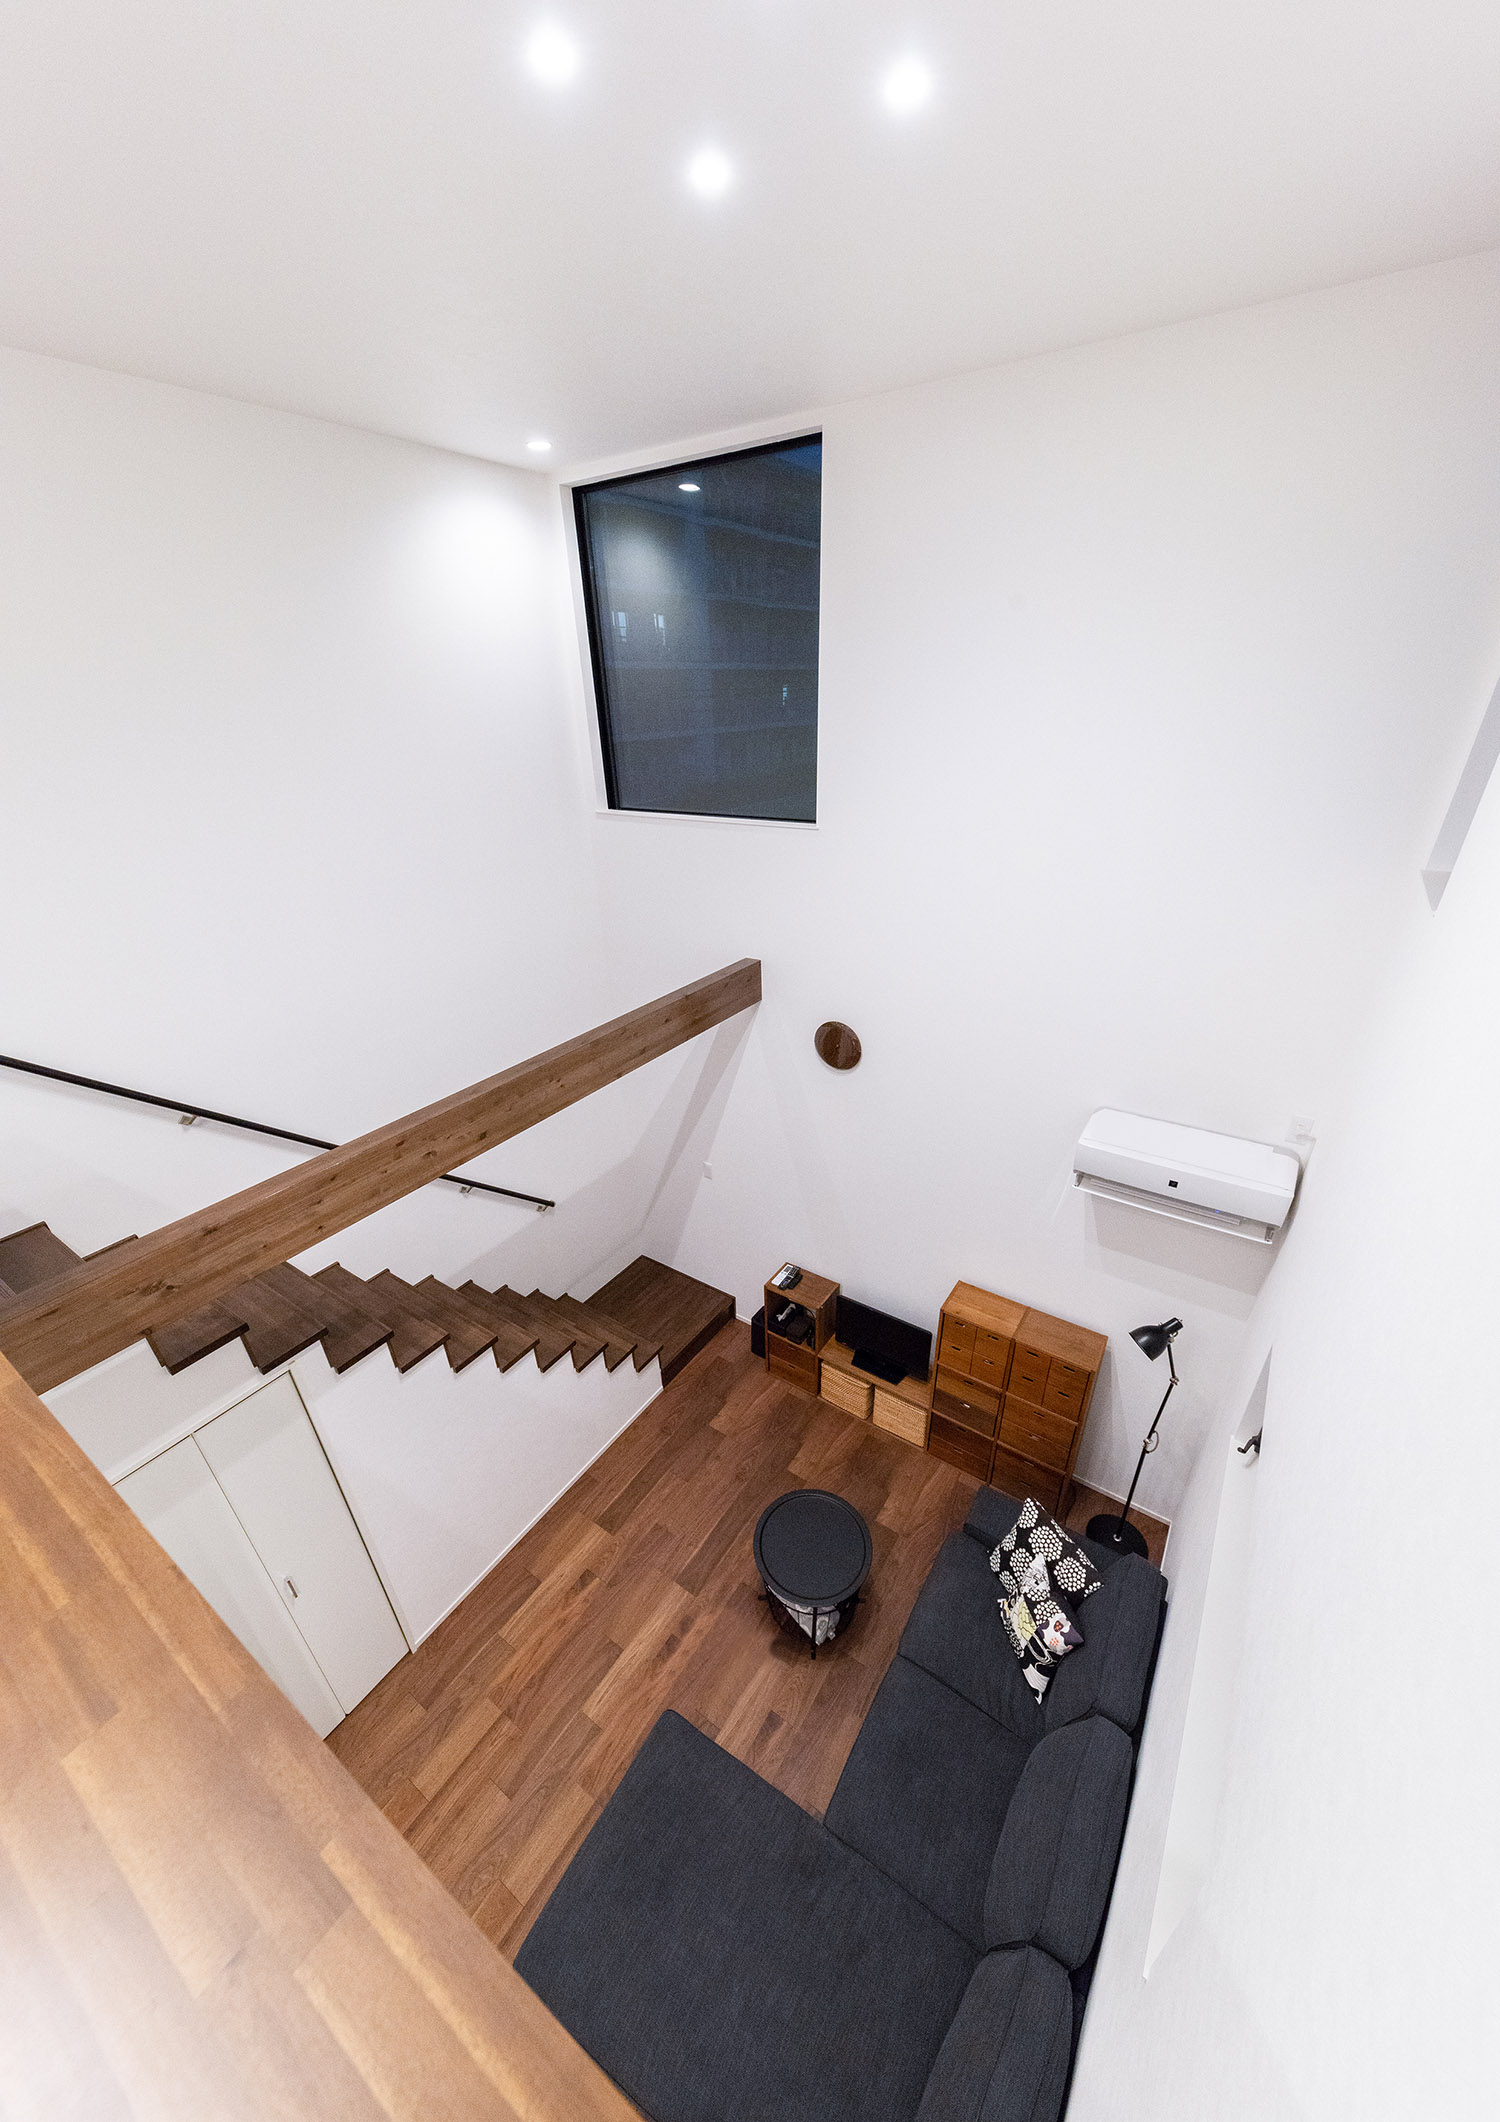 吹き抜けの天井にダウンライトを取り付けた開放感のある明るいLDK・デザイン住宅